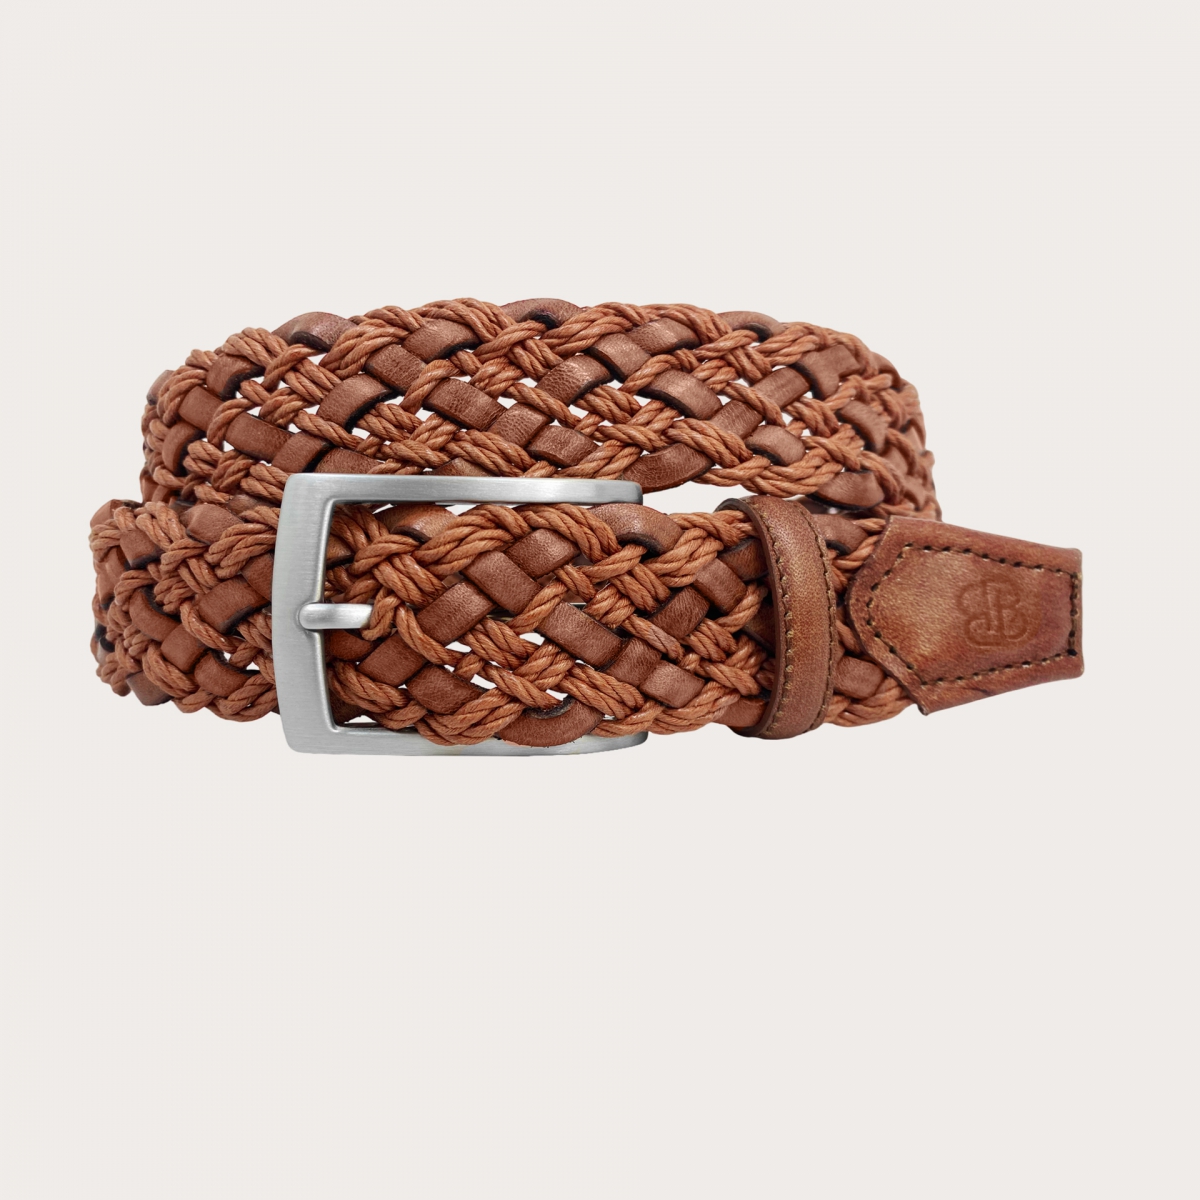 Woven Belt, Cinturón Artesanal Tejido,multicolored Leather Cotton